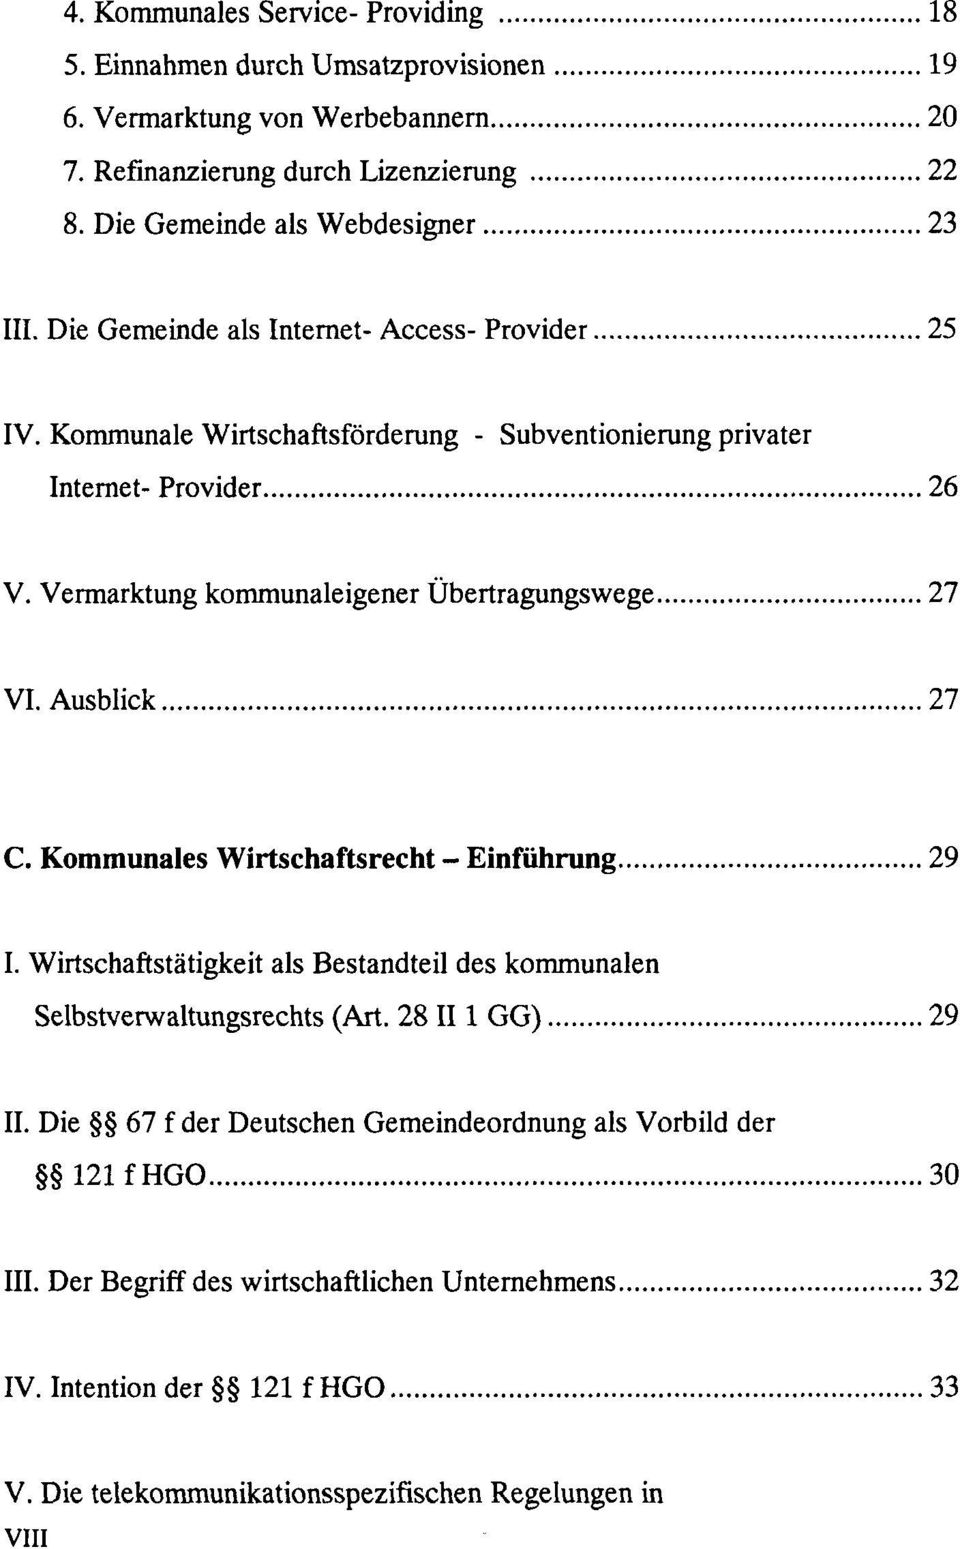 Vermarktung kommunaleigener Übertragungswege 27 VI. Ausblick 27 C. Kommunales Wirtschaftsrecht - Einführung 29 I.